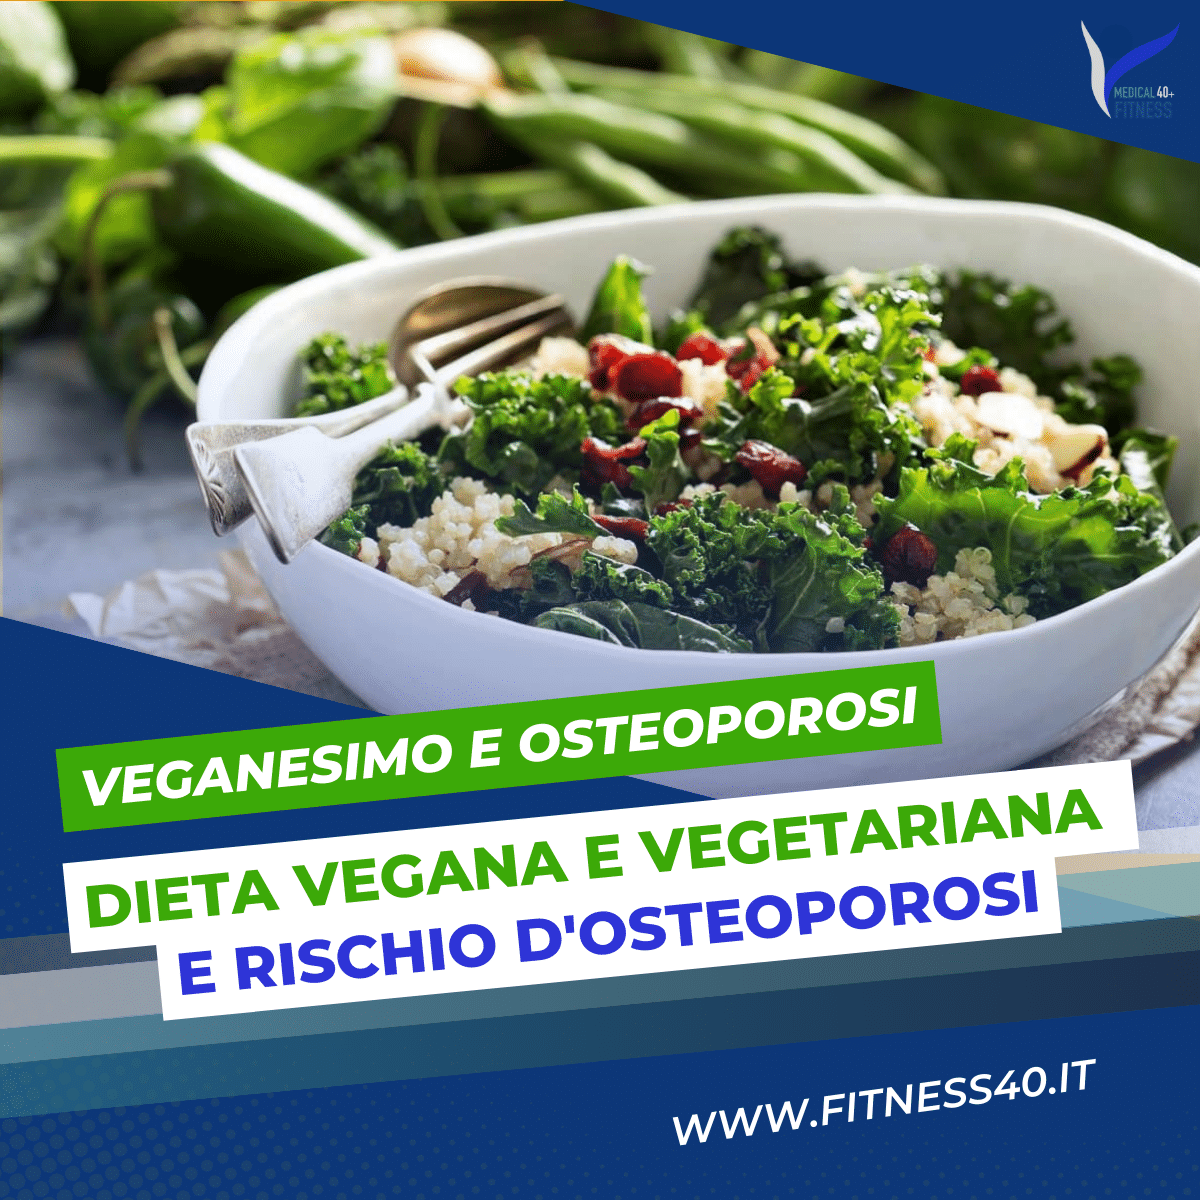 Dieta vegana e vegetariana e rischio d'osteoporosi